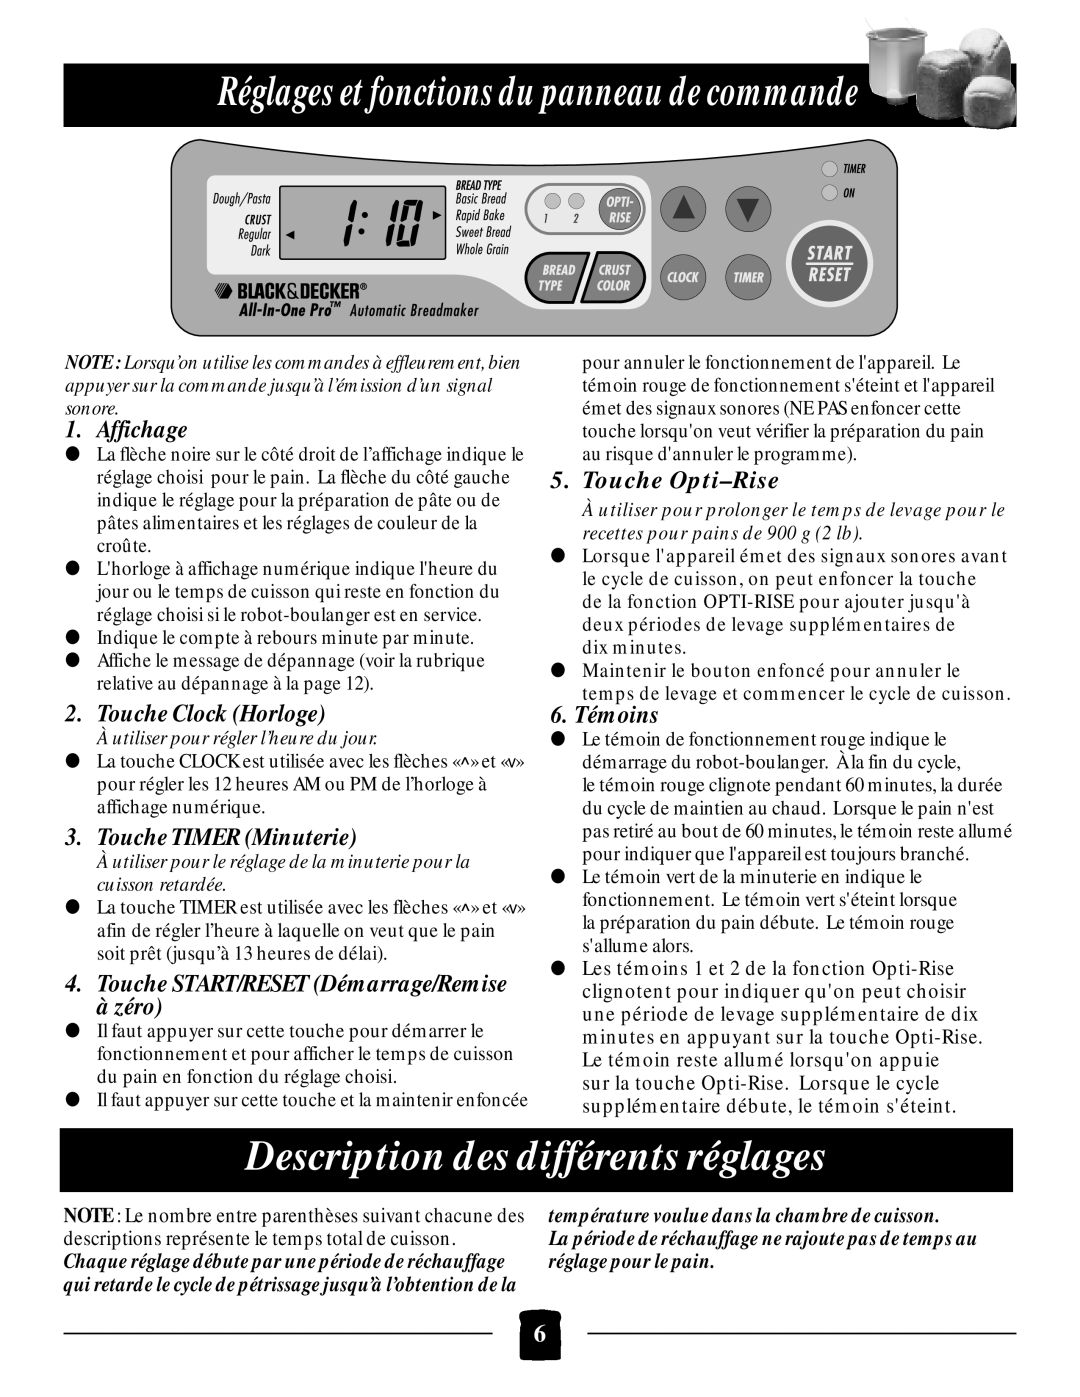 Black & Decker B1650 Réglages et fonctions du panneau de commande, Description des différents réglages, Affichage, à zéro 